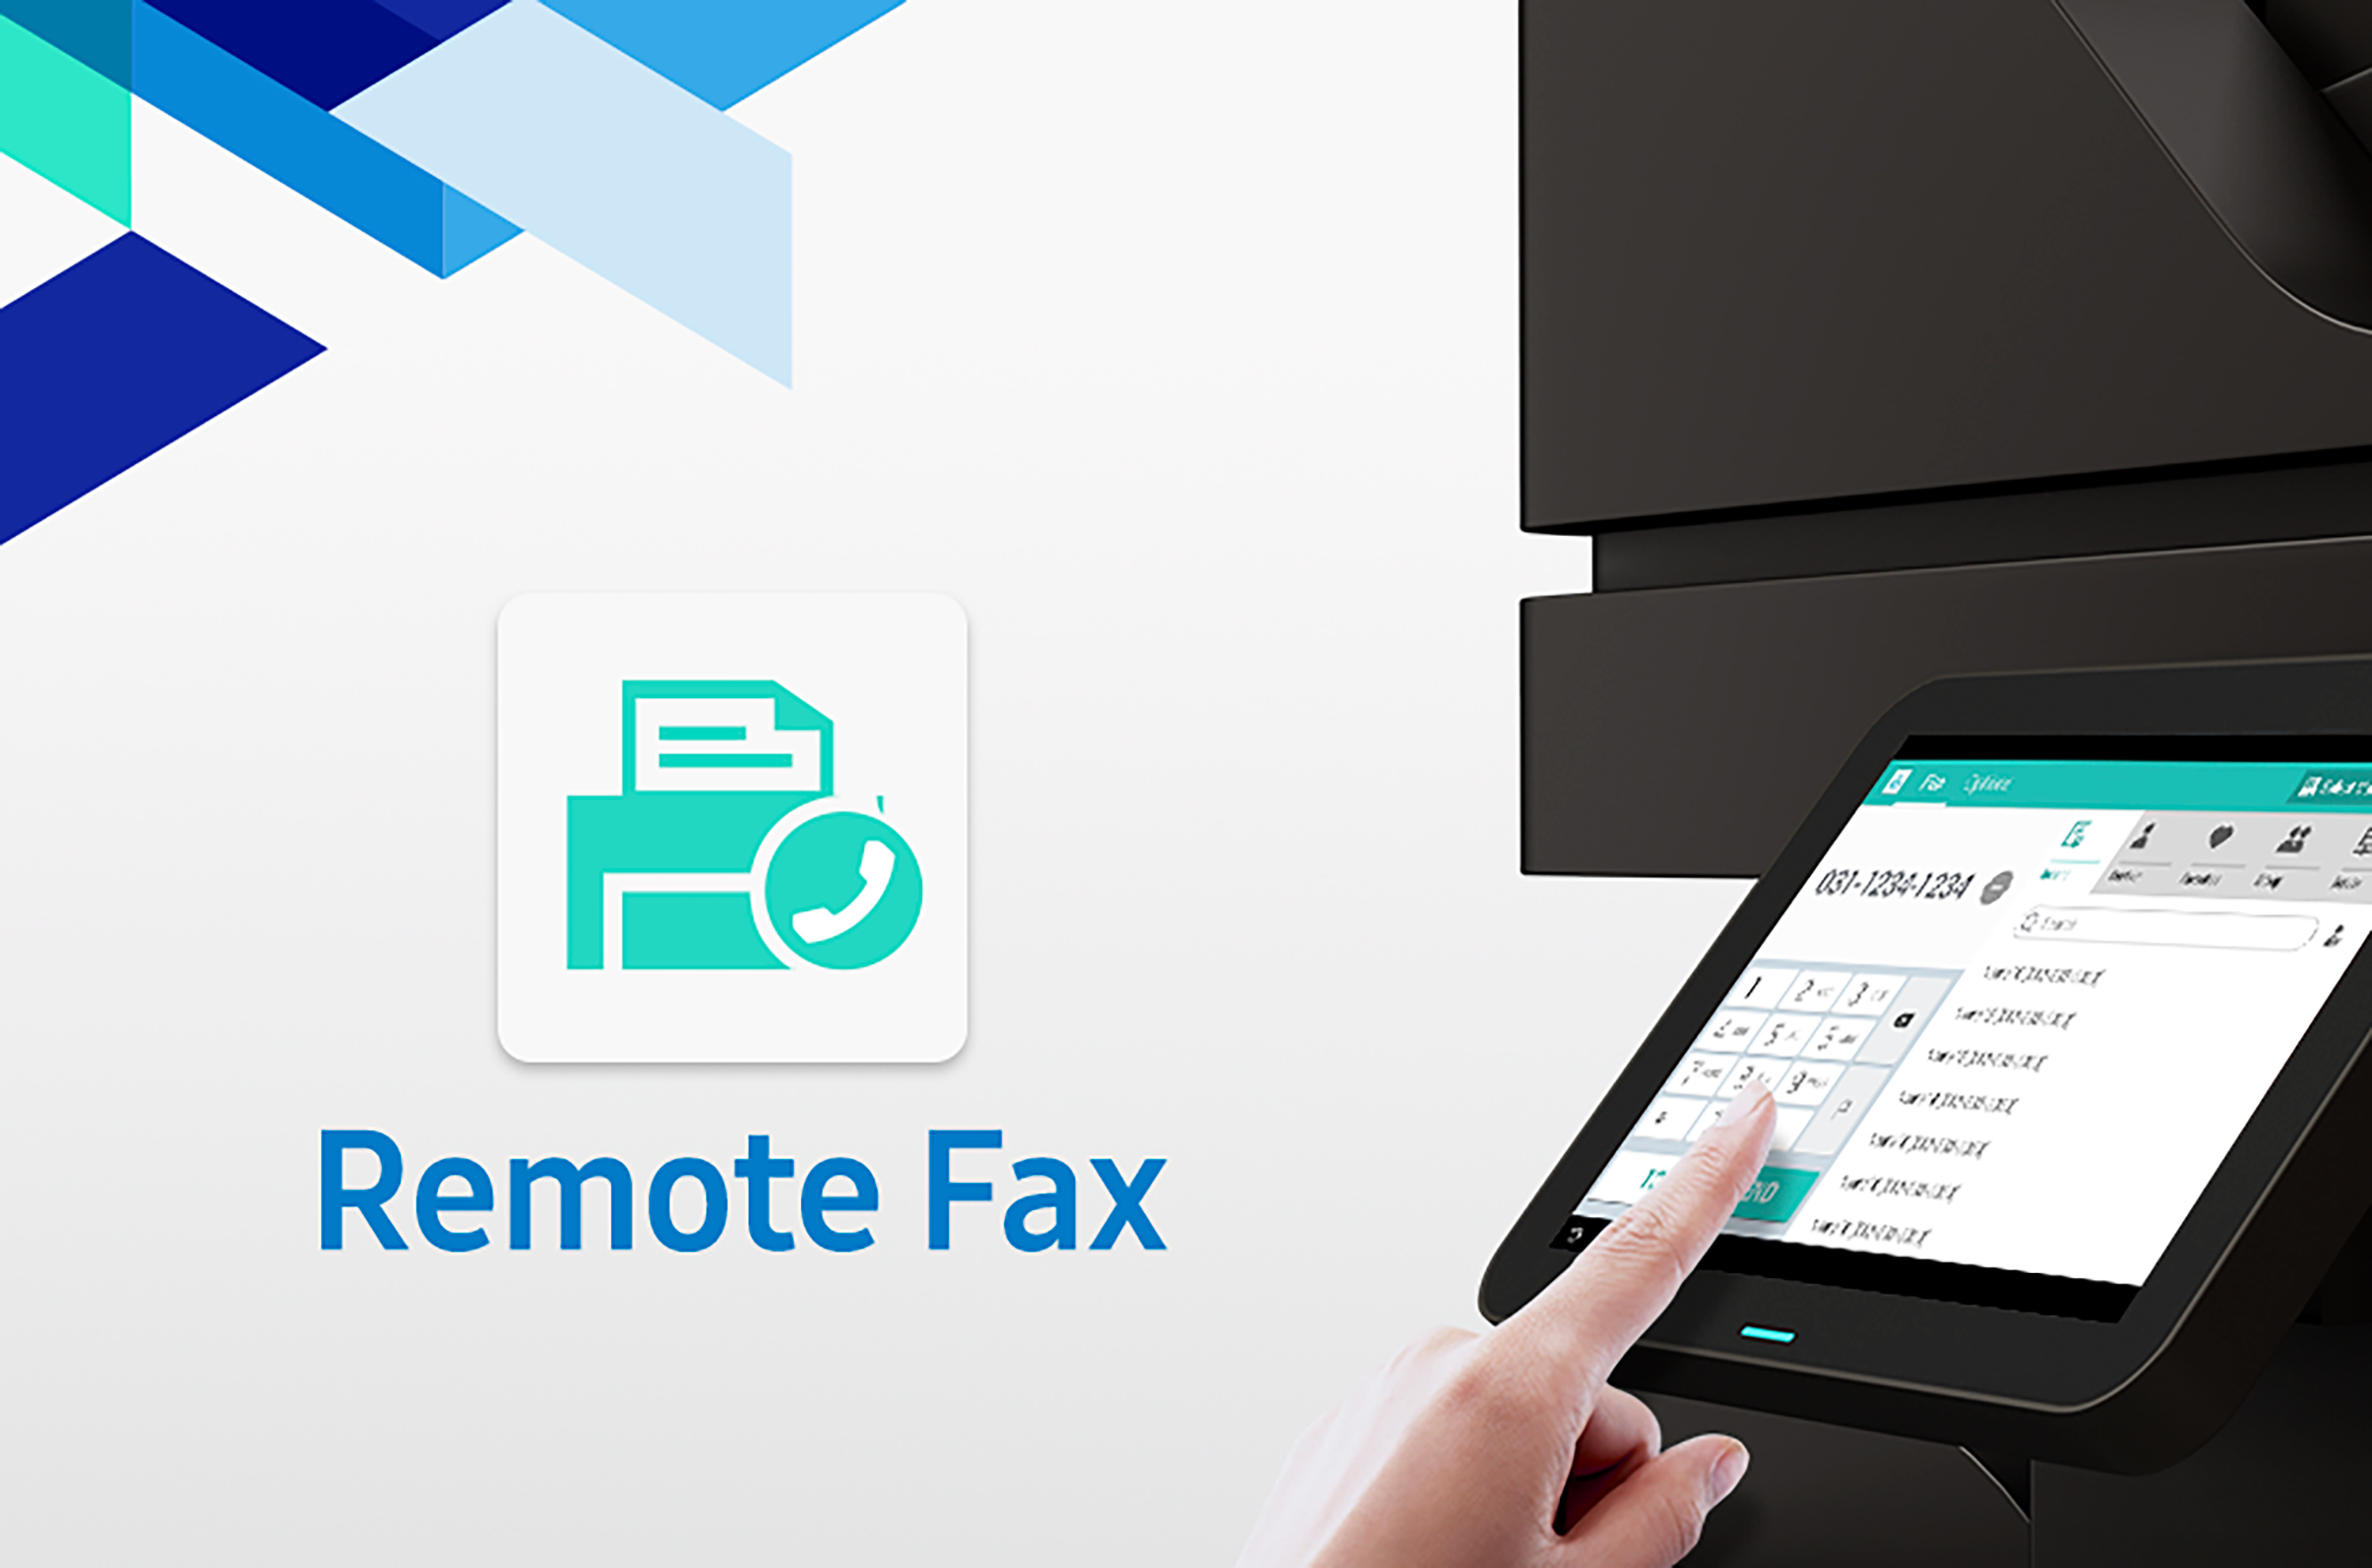 삼성전자가 프린팅 제품의 팩스 기능을 강화하고 유지비용을 절감 할 수 있는 ‘리모트 팩스(Remote Fax)’ 앱을 출시했다. ‘리모트 팩스’ 앱은 하나의 팩스 라인으로 사무실 내 다수의 프린팅 기기에서 팩스 기능을 사용할 수 있도록 지원하는 솔루션이다. 팩스 기능이 있는 프린팅 기기마다 전화선을 연결해야 하는 기존 방식과 달리, 전화선 연결이 된 팩스 전용기기 1대와 ‘리모트 팩스’ 앱만 있으면 다른 프린팅 기기들은 전화선 연결 없이 간편하게 팩스를 보낼 수 있다. 삼성전자 스마트UX를 지원하는 복합기 제품에 ‘리모트 팩스’ 앱을 설치하고 팩스 문서를 스캔하면 네트워크를 통해 전화선 연결이 된 팩스 전용 기기에 전달하게 되고, 팩스 전용 기기가 수신된 문서를 전화선을 통해 발송한다. 팩스 기능을 사용하기 위해 프린팅 기기에 PSTN(일반전화회선)이나 추가 옵션을 설치할 필요가 없어 비용을 절감할 수 있고, 종이 종류 선택과 양면 스캔 등 다양한 기능을 제공한다. ‘리모트 팩스’ 앱은 삼성전자에서 최초로 출시한 유료 프린팅 앱으로, 삼성전자는 사업 파트너들에게 신규 수익모델을 제시할 수 있을 것으로 기대하고 있다. 삼성전자 프린팅솔루션 사업부 전략마케팅팀 팀장 송성원 전무는 “삼성전자는 사용 편리성과 운영 효율성 등 프린팅 제품에 대한 시장의 니즈와 고객의 요구에 부응하기 위해 최선을 다하고 있다”며, “‘리모트 팩스’ 앱을 통해 효율적이고 빠른 업무가 가능한 오피스 환경을 구축할 것”이라고 말했다. ‘리모트 팩스’ 앱은 삼성전자의 MX7 시리즈를 포함해 스마트 UX 센터가 지원되는 프린팅 제품에 적용 가능하며, 삼성 프린팅 앱 센터에서 다운로드 할 수 있다.